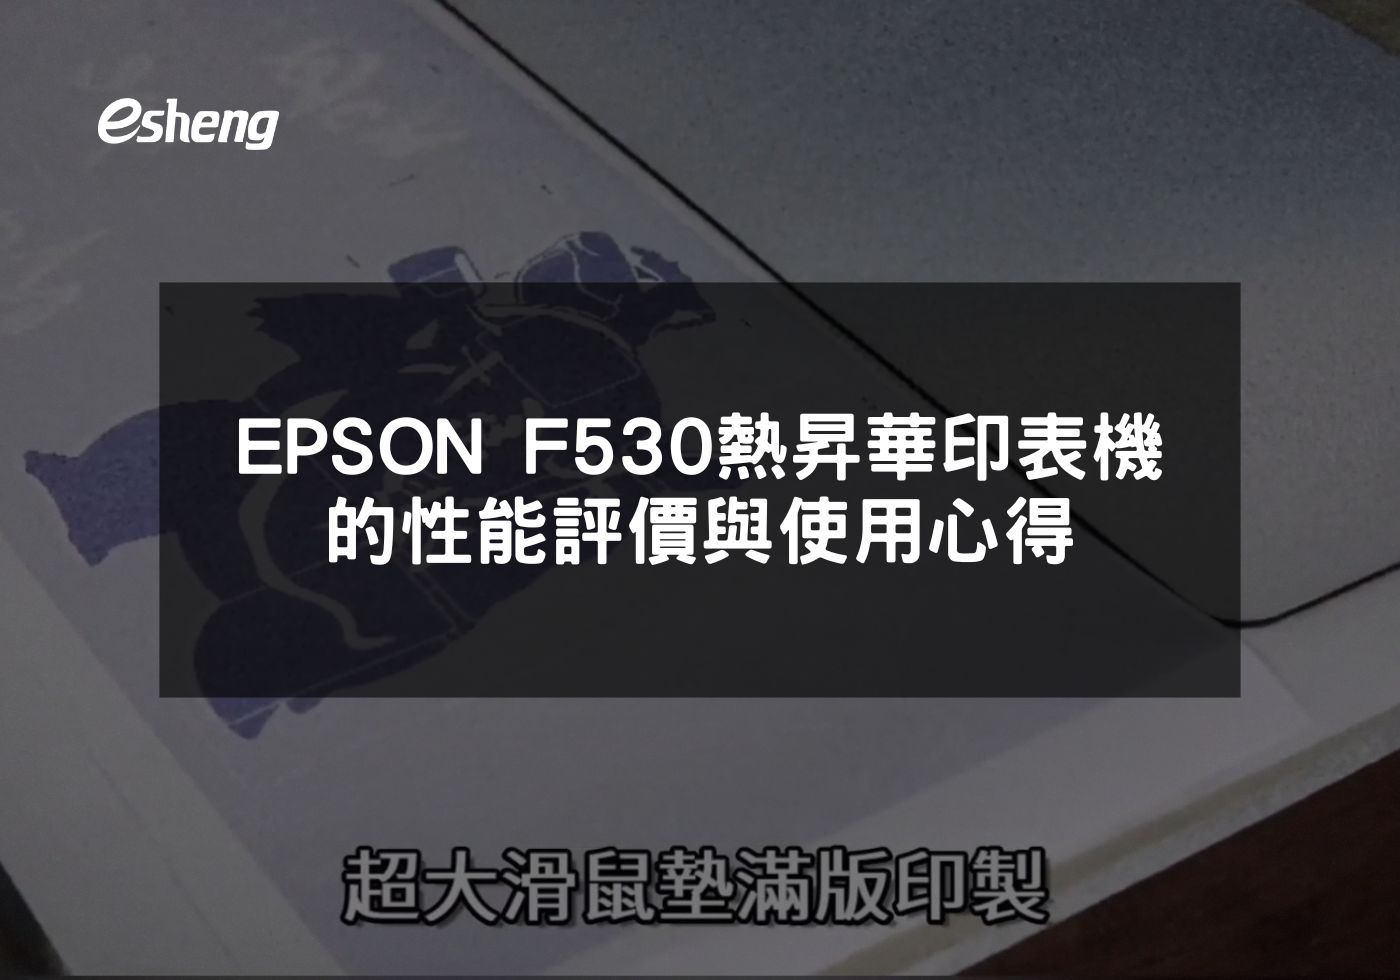 您目前正在查看 EPSON F530熱昇華印表機的性能評價與使用心得